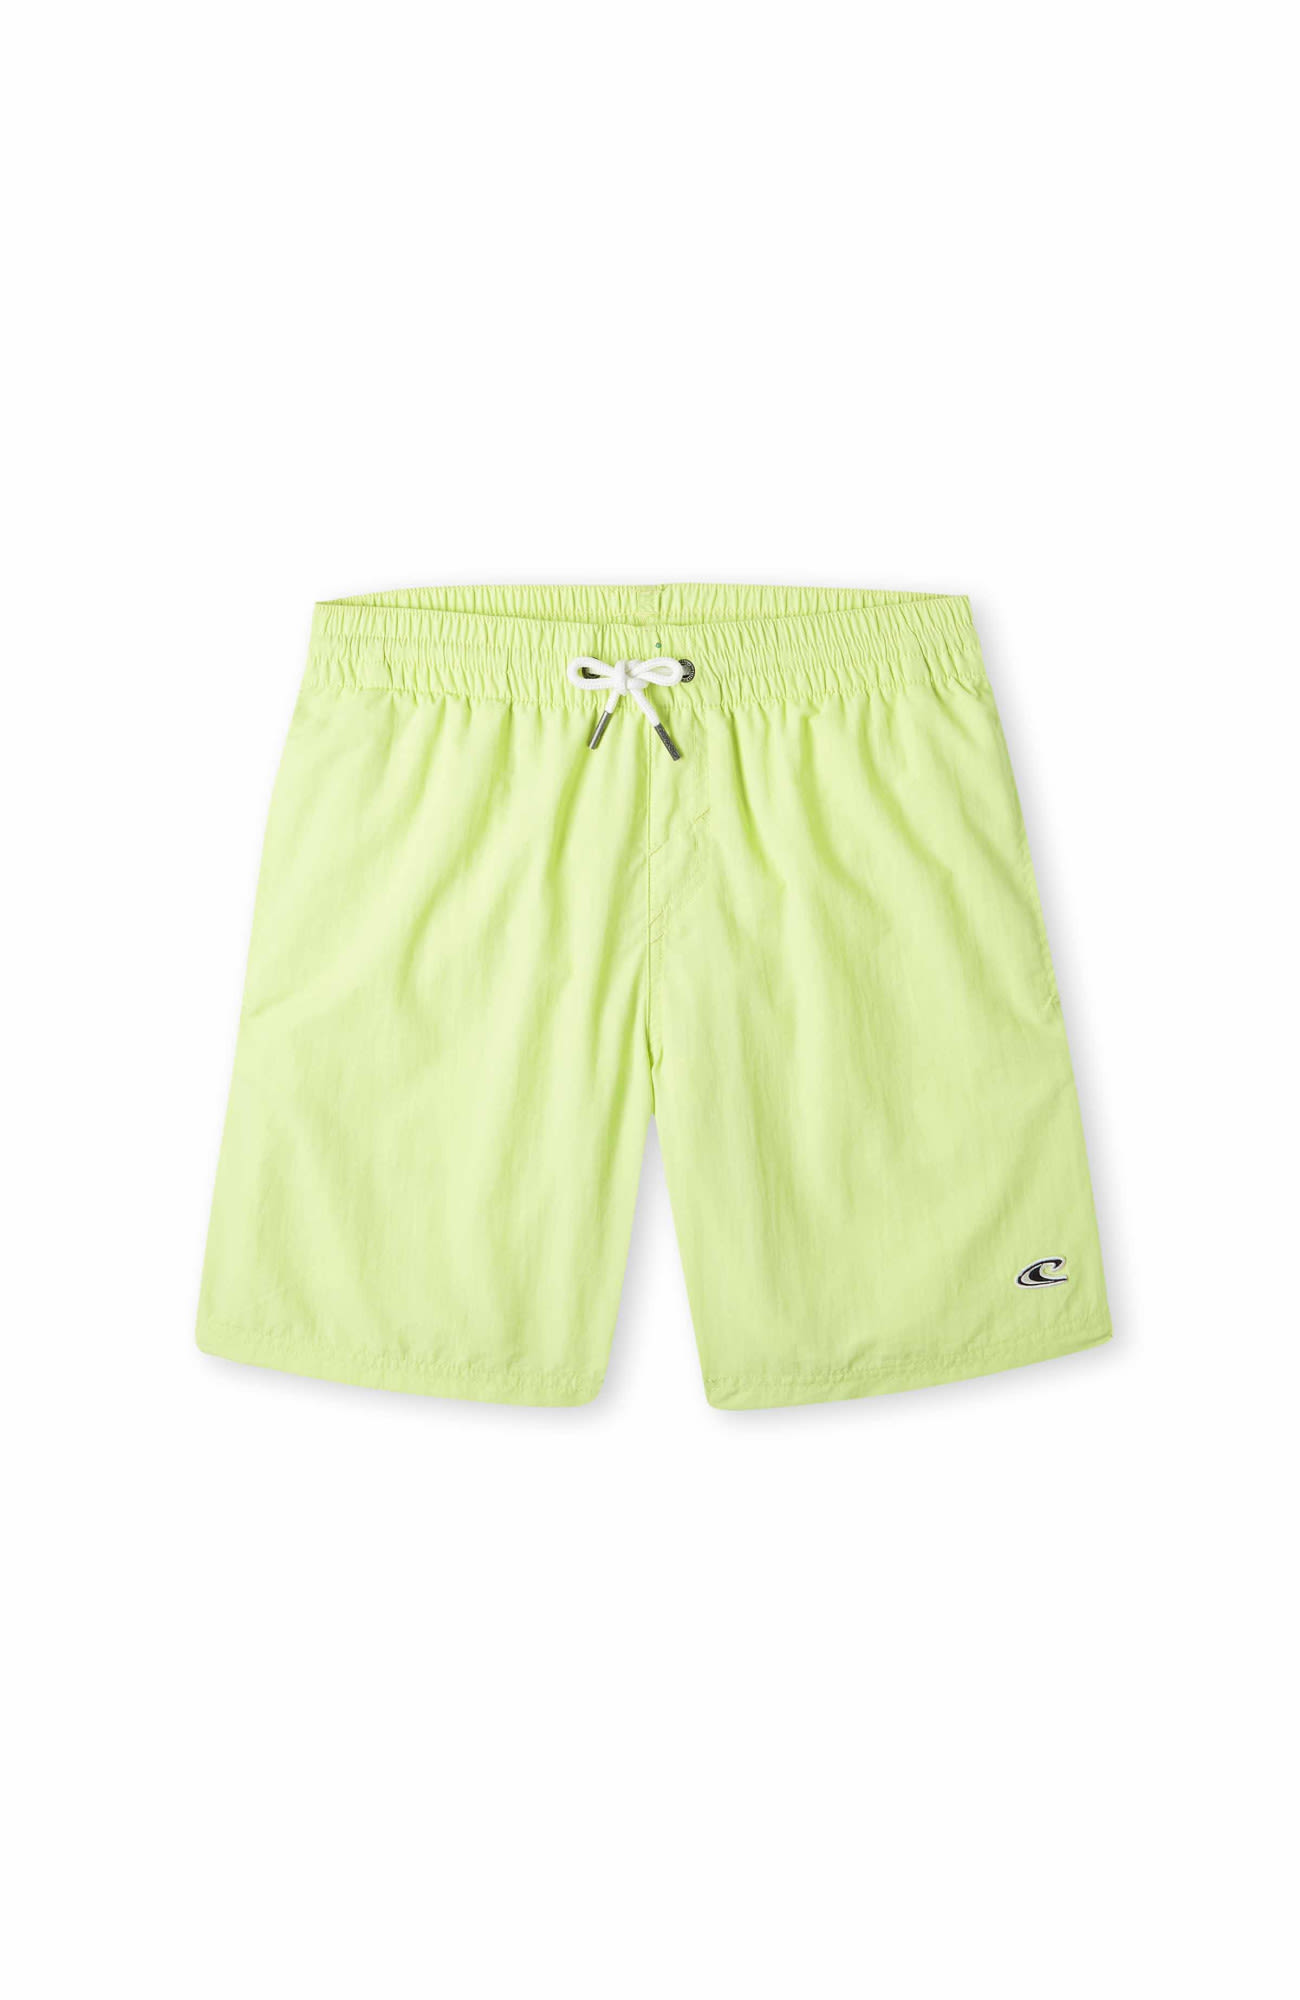 Oneill Boys Vert 14" Swim Shorts Grün | Größe 140 | Jungen Badeshorts